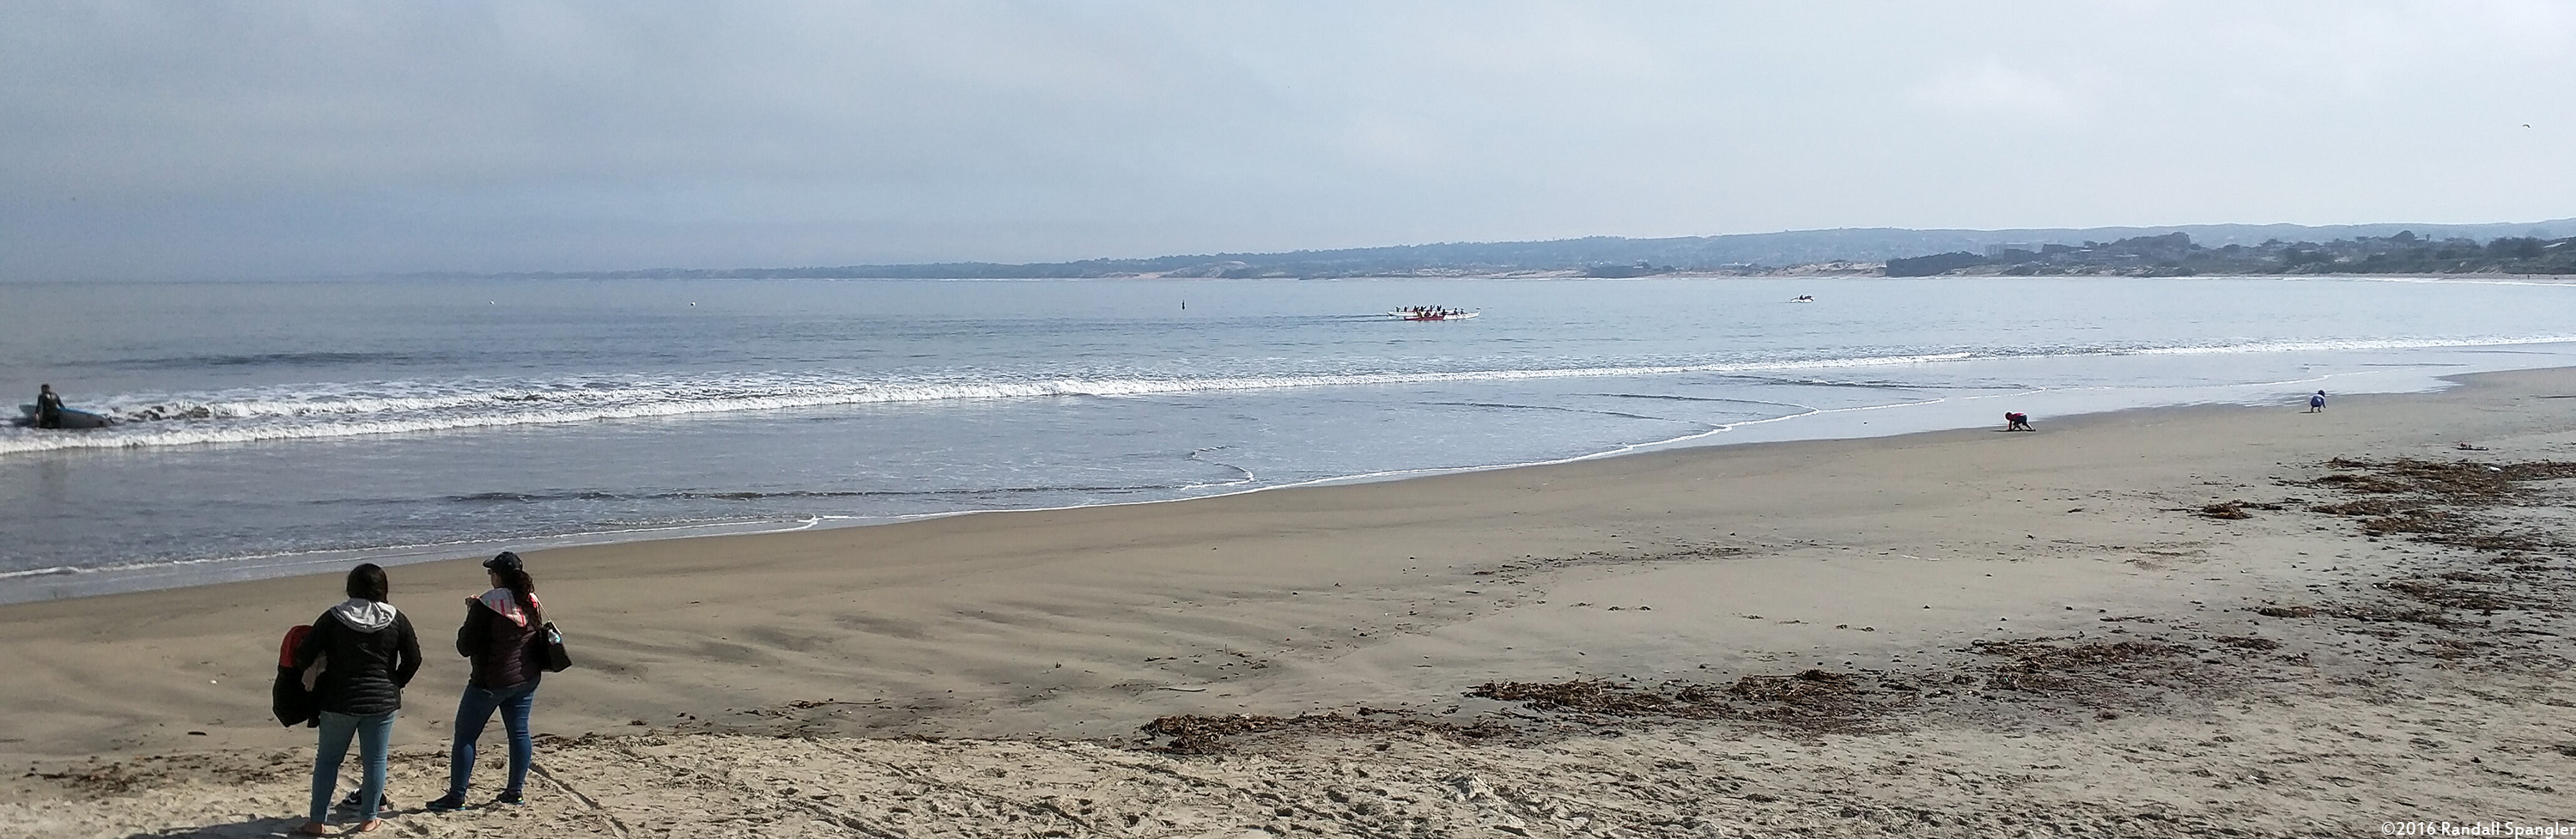 Monterey State Beach panorama